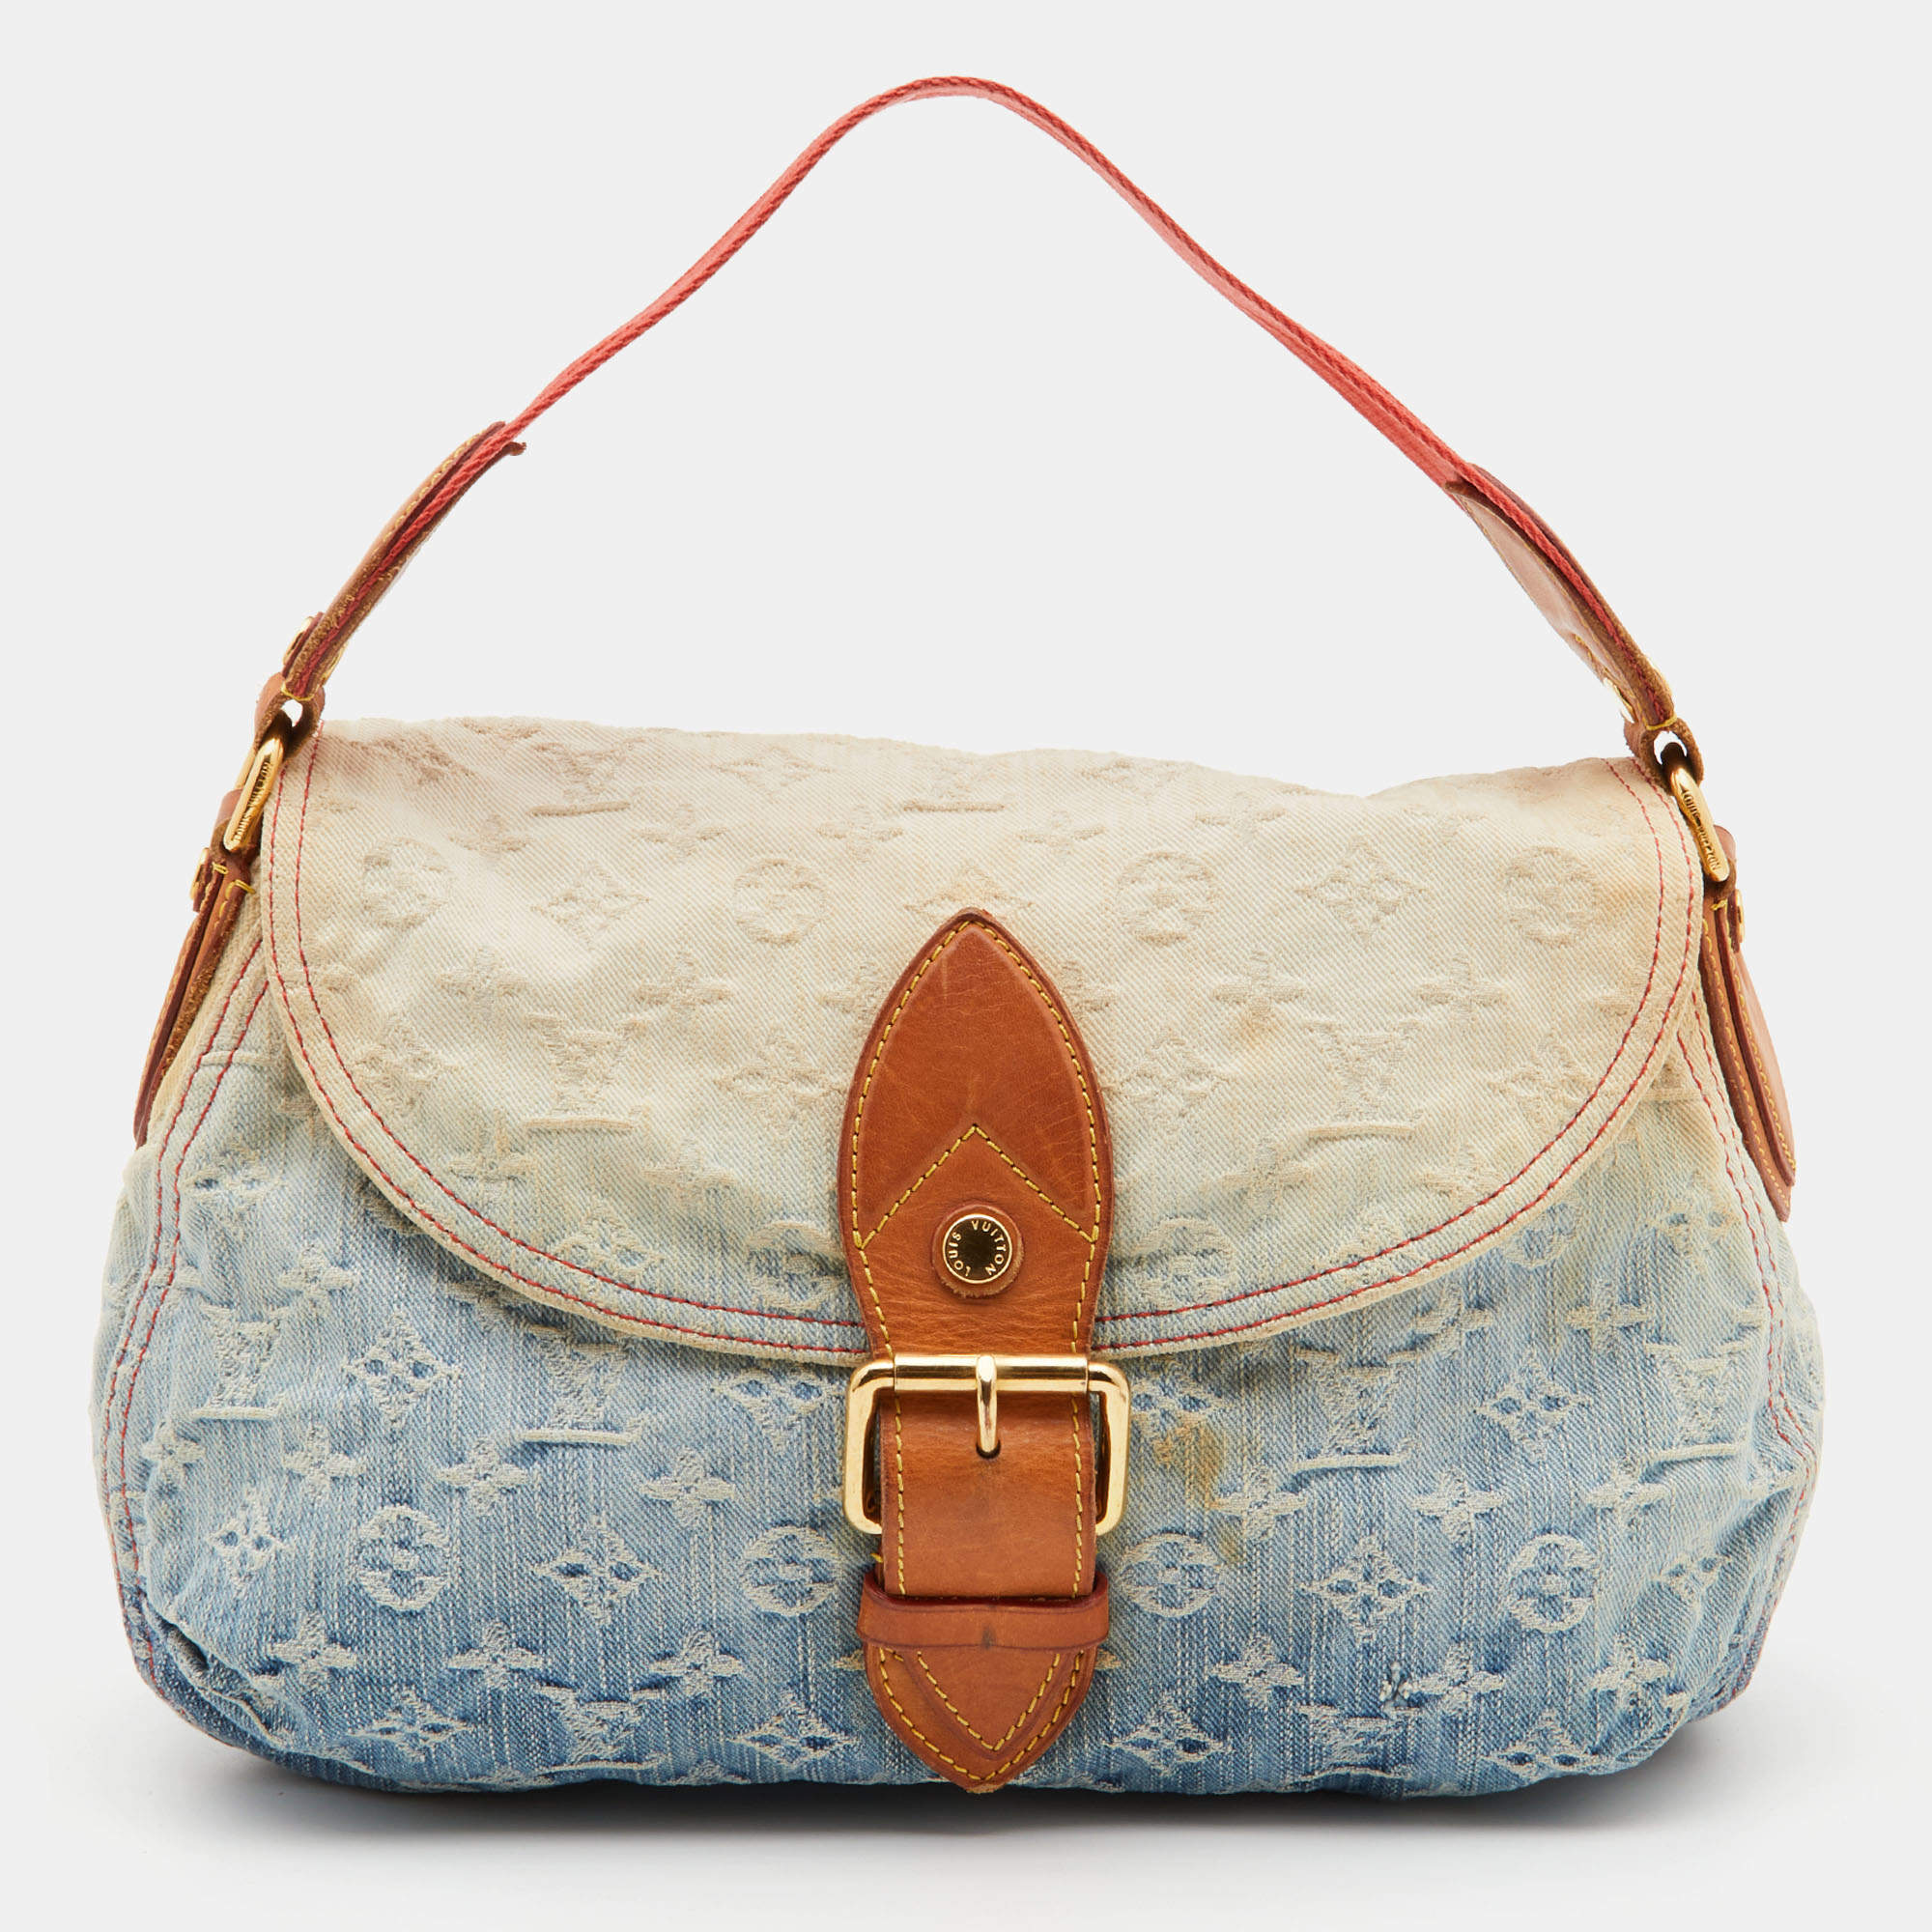 Louis Vuitton Gives Its Signature Handbags a Denim Update